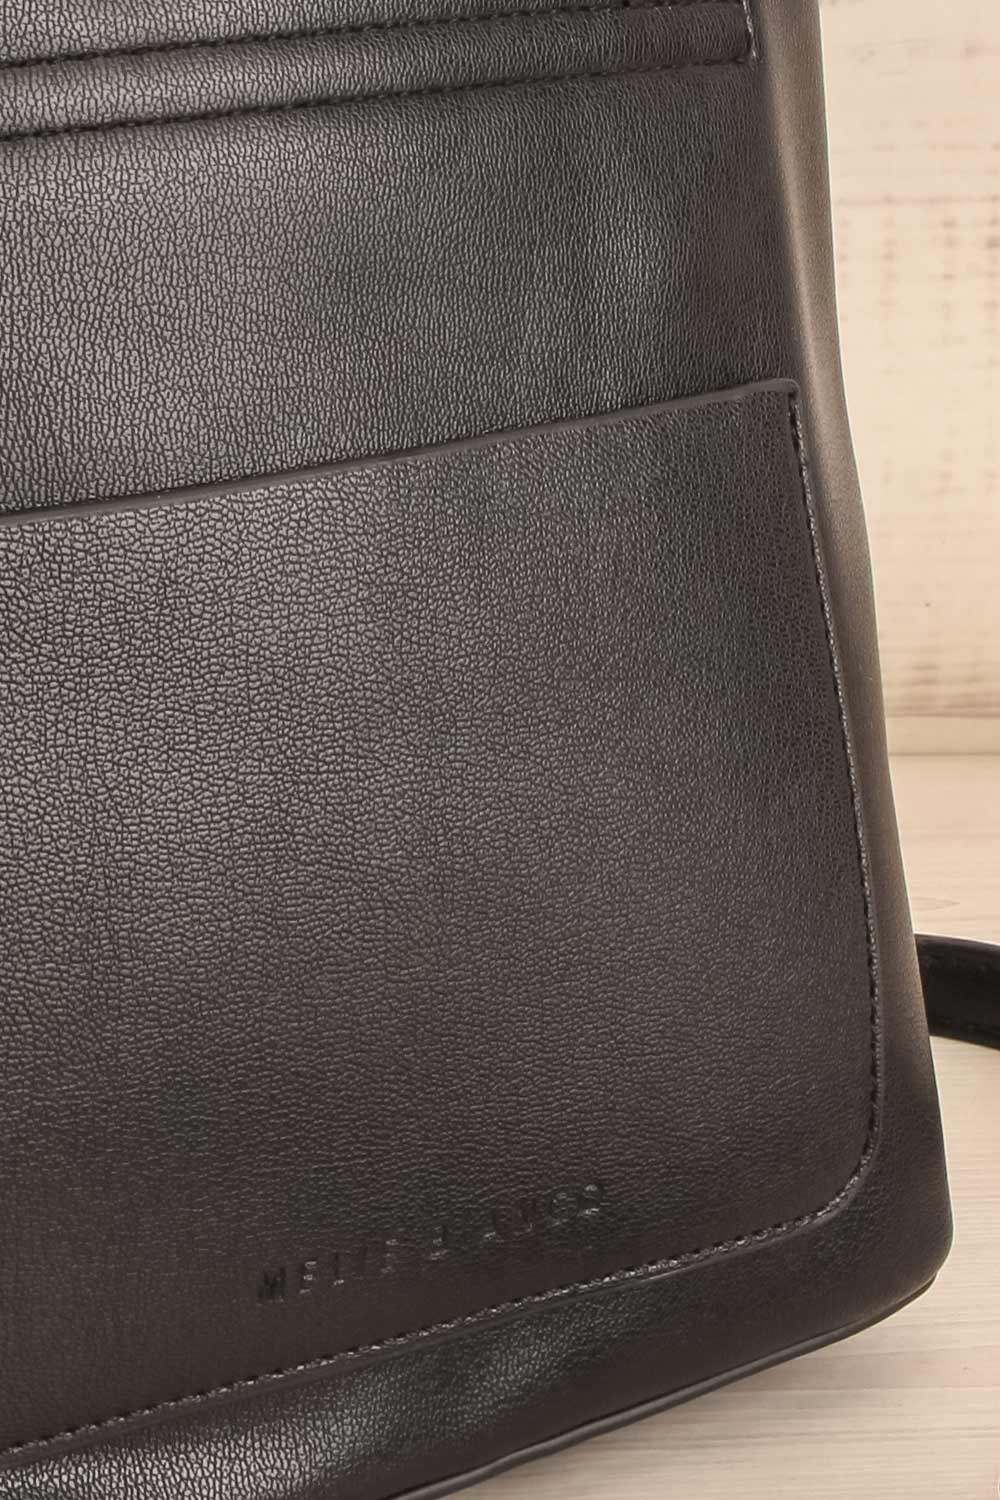 Linrot Black Small Vegan Leather Tote Bag | La petite garçonne details